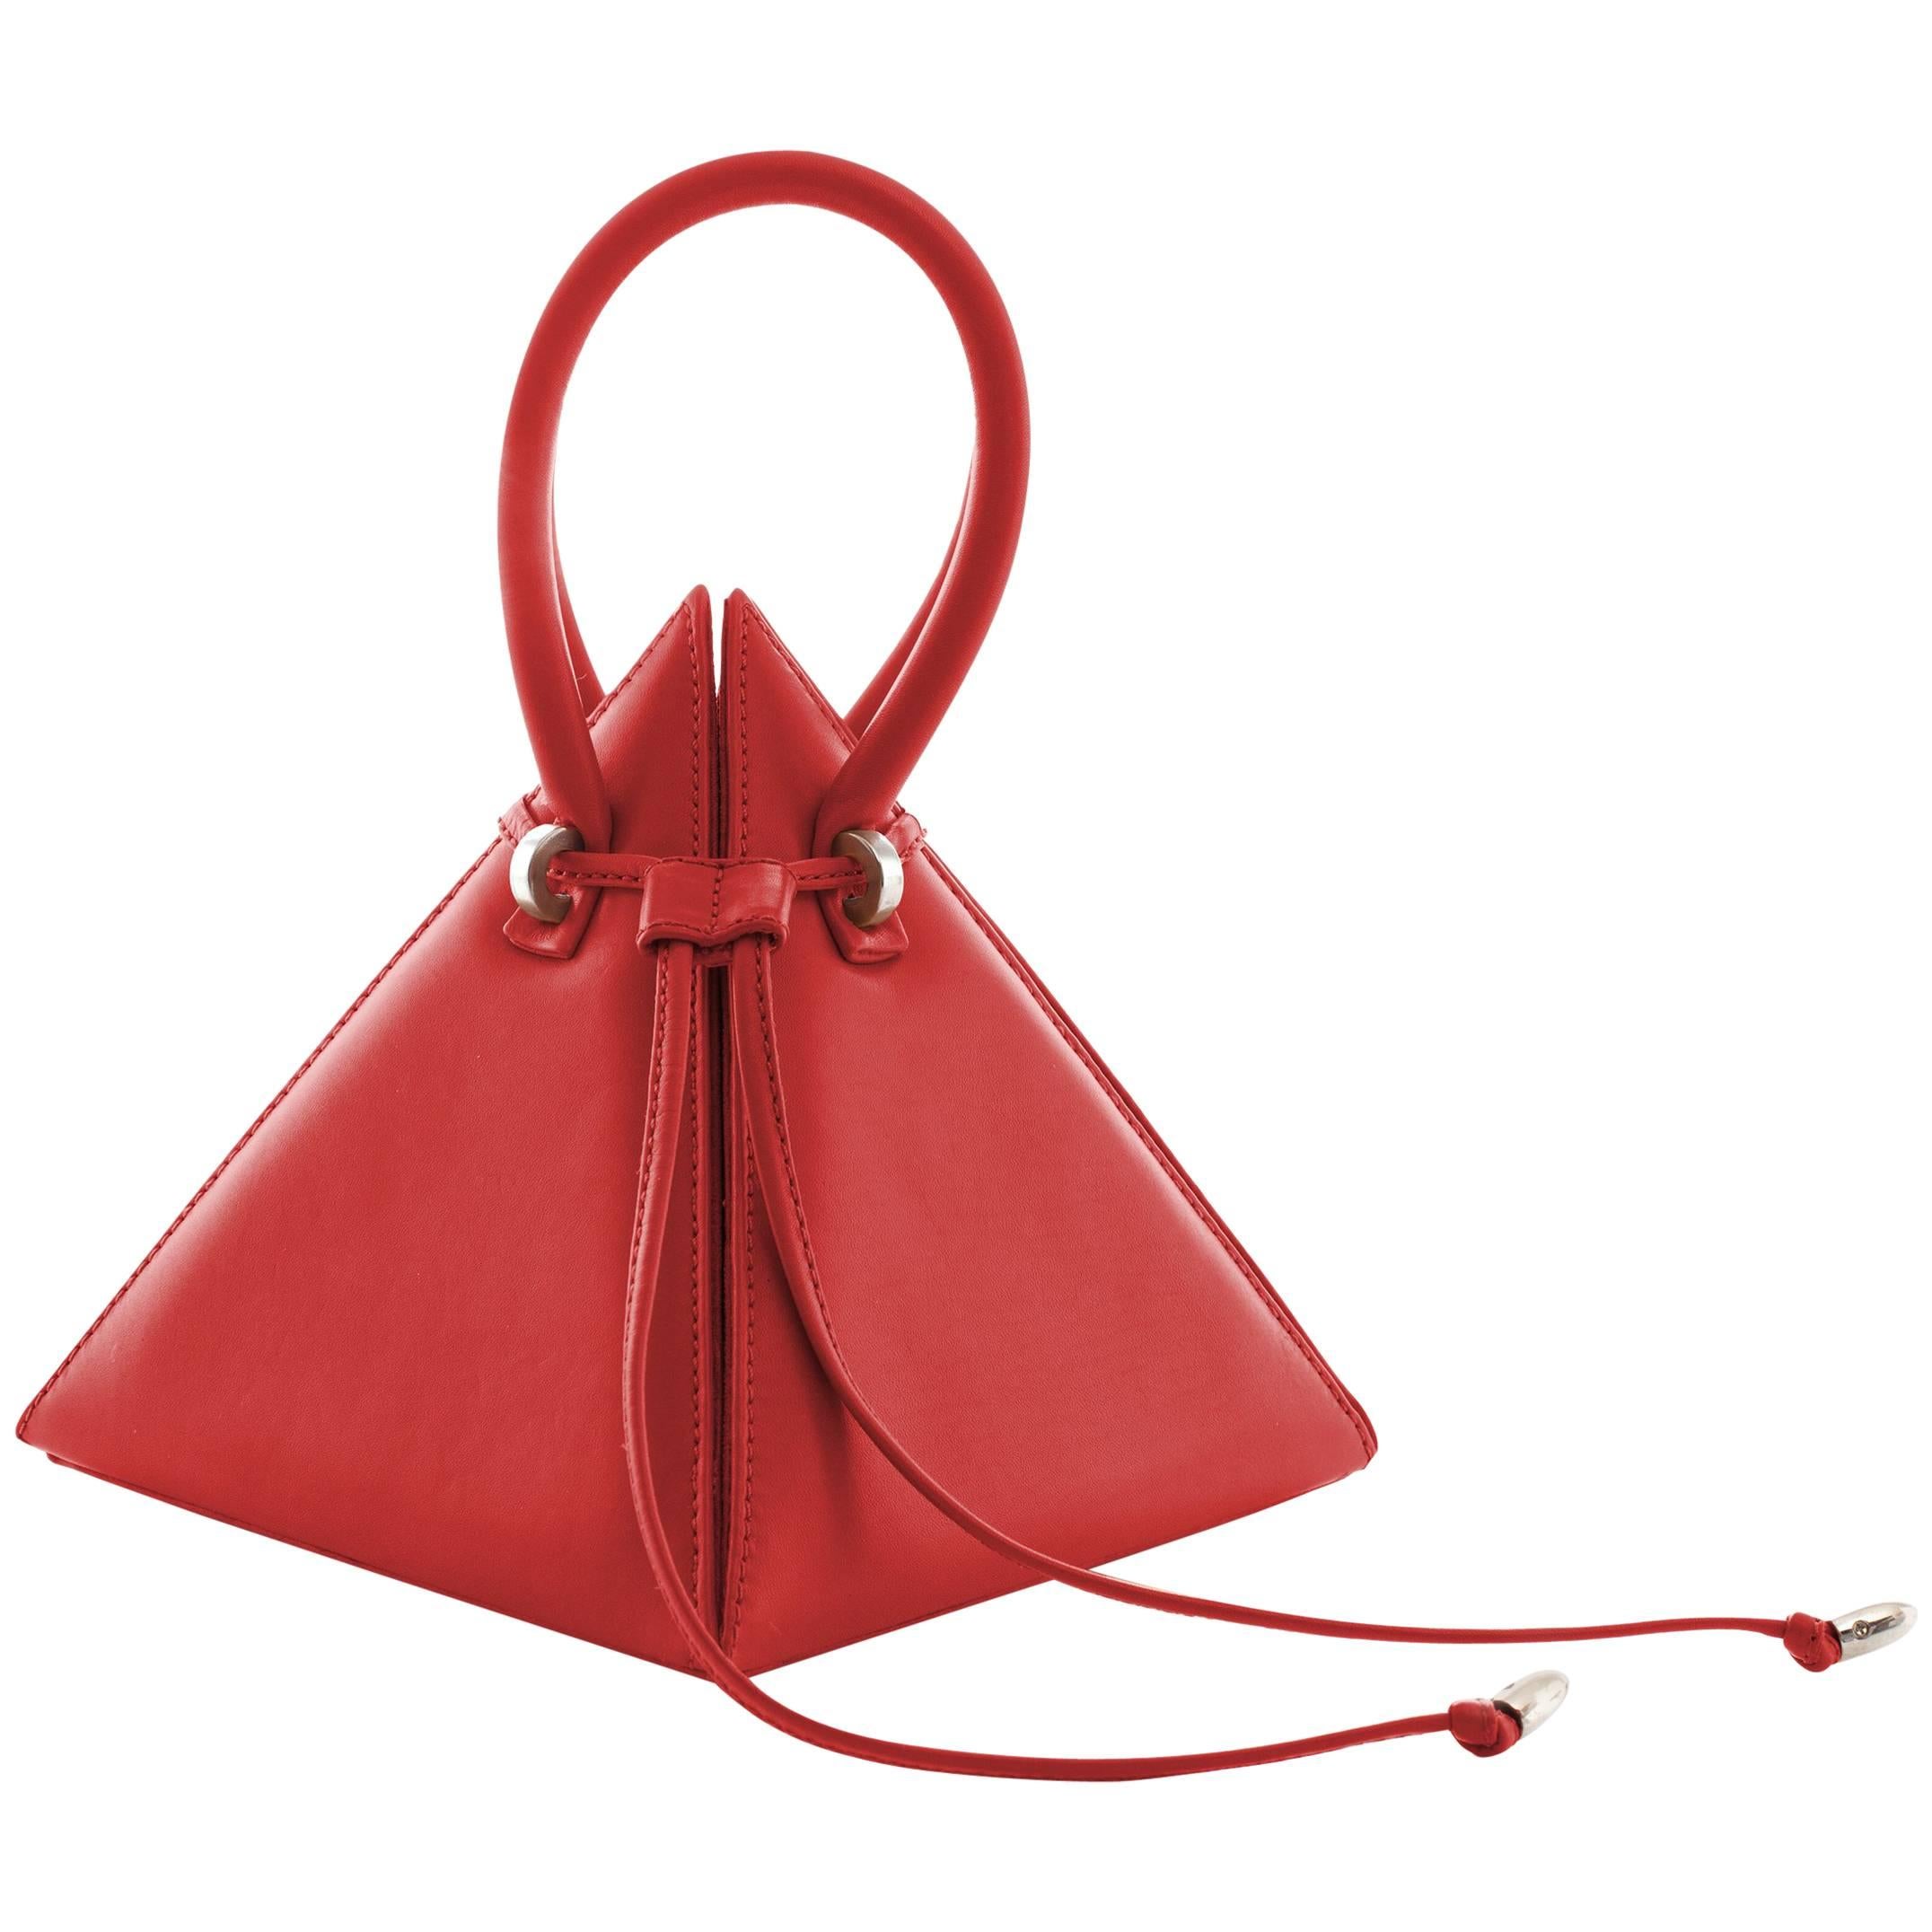 NitaSuri Lia Red Leather Pyramid Handbag For Sale